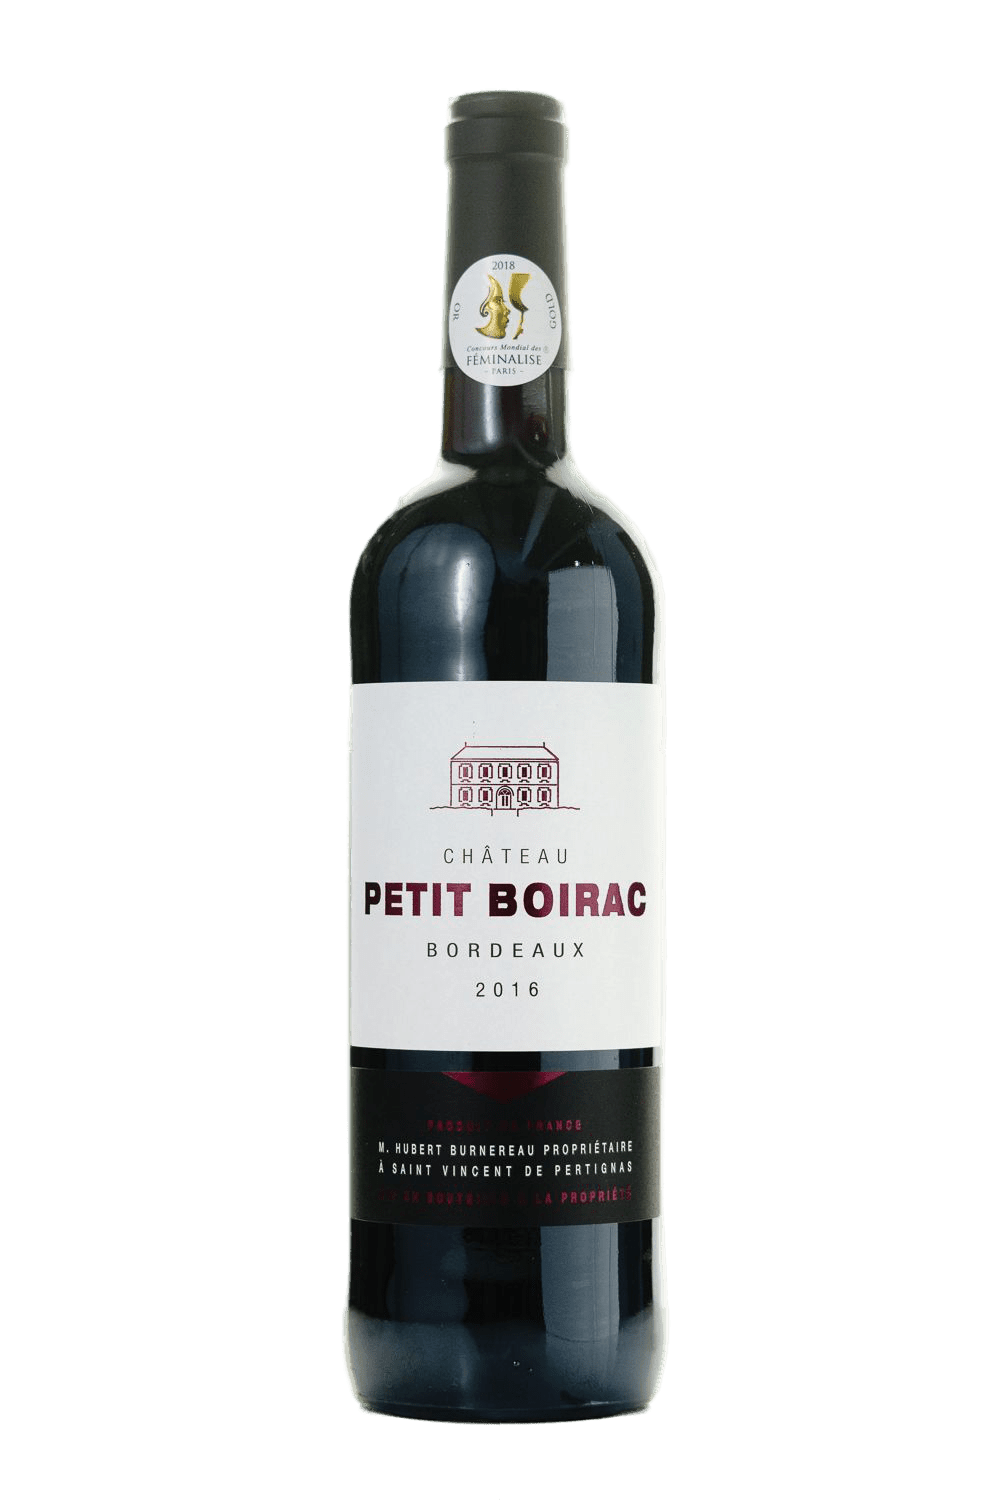 Chateau Petit Boirac Bordeaux 2016 - The Blend Wines